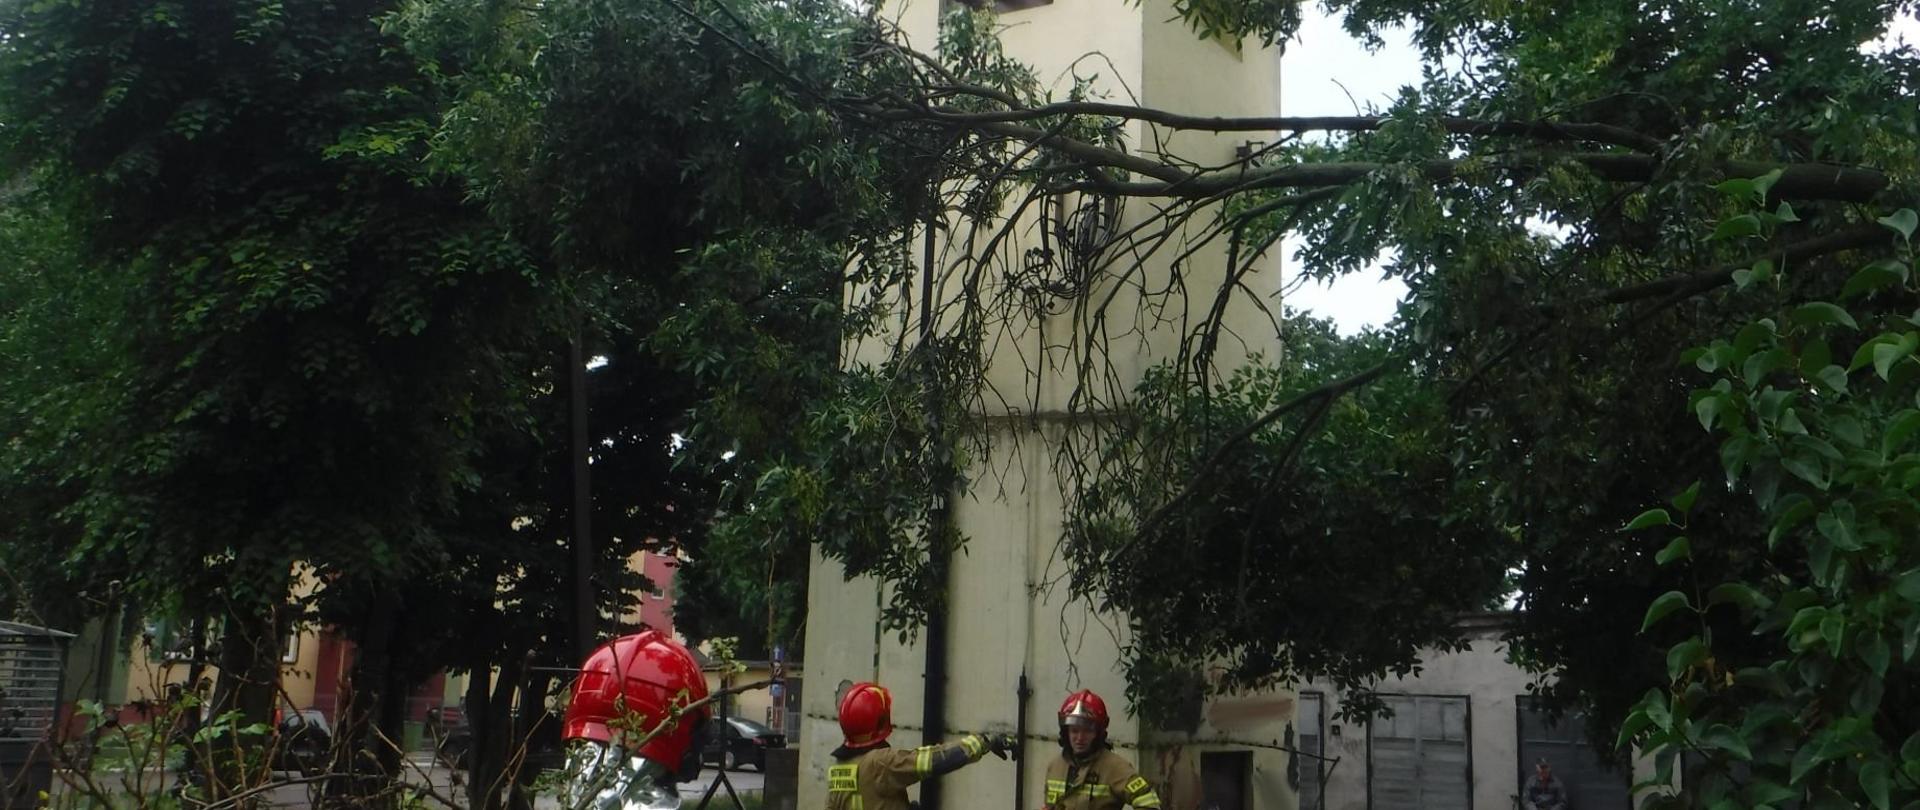 Na zdjęciu widać trzech strażaków w żółtych ubraniach i czerwonych hełmach usuwających gałęzie, które spadły na linię energetyczną przy transformatorze. W tle widać blok, samochody i inne drzewa. Jest dzień.